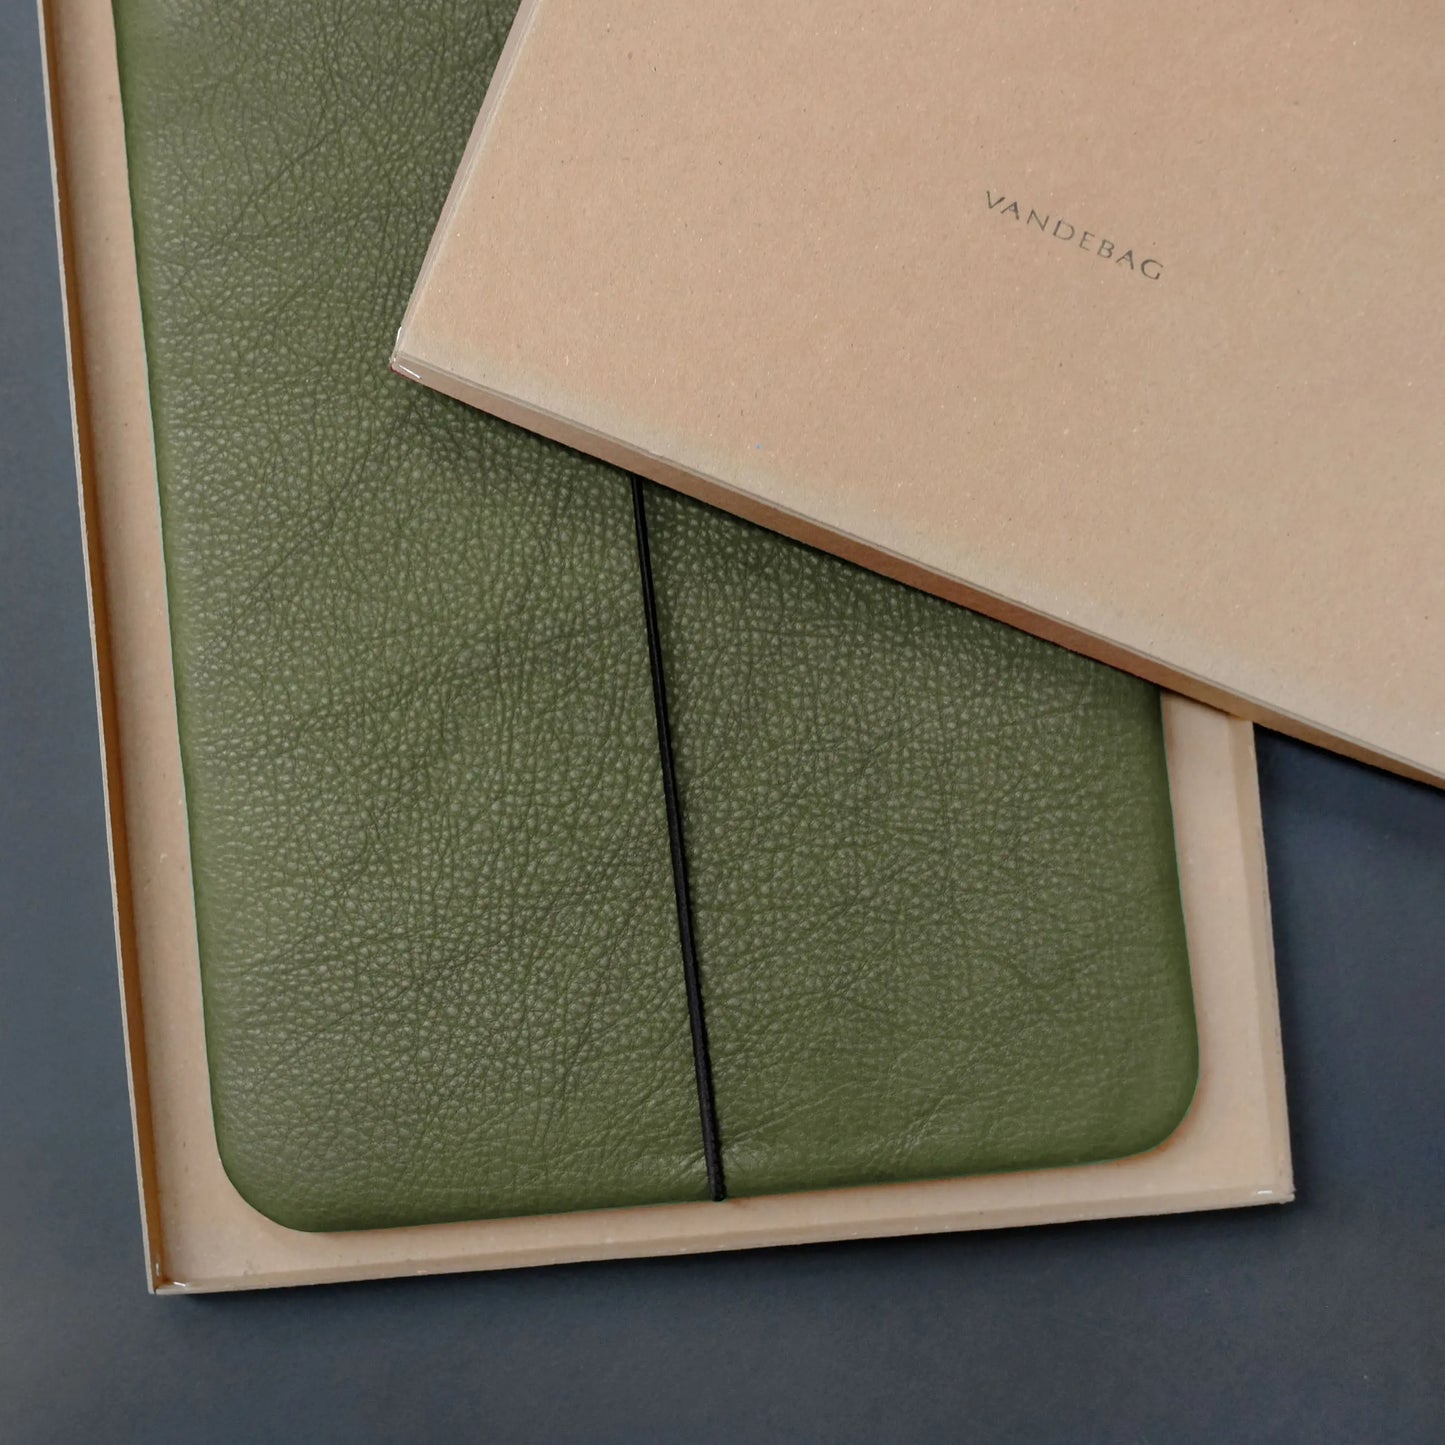 olivgrüne iPad-Hülle aus Nappaleder in einer braunen Produktverpackung aus Recycling-Karton